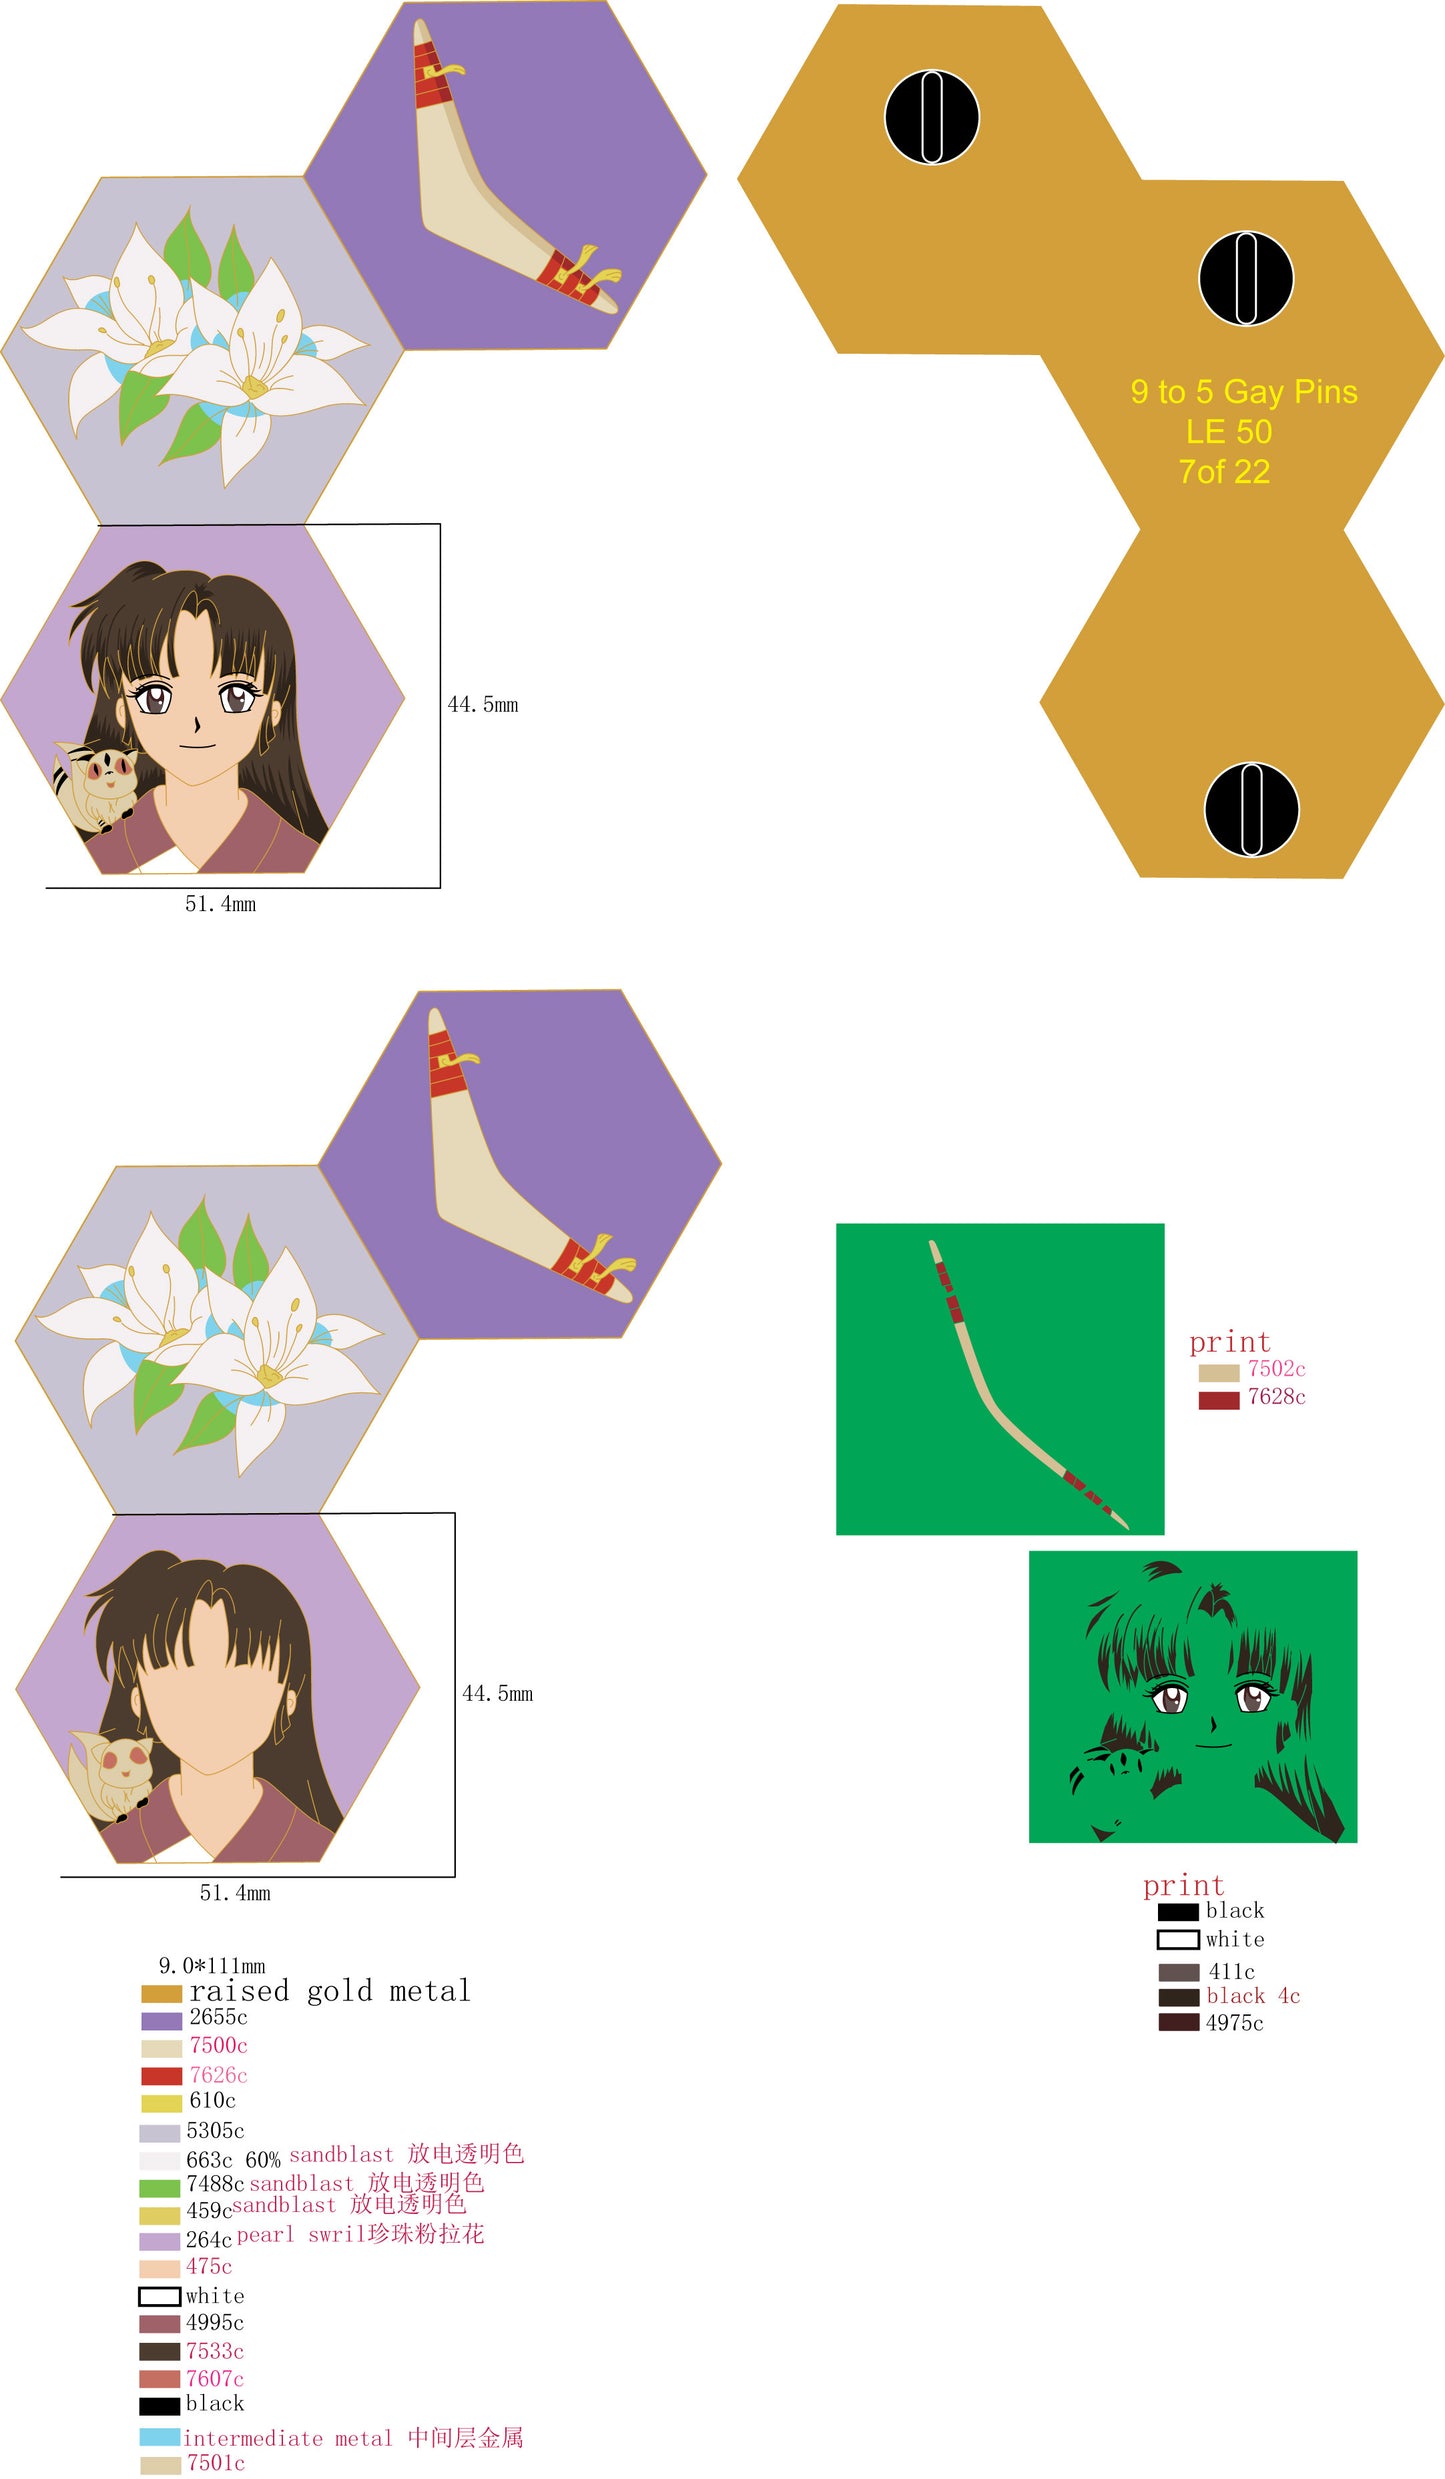 Inuyasha Puzzle: Group 4